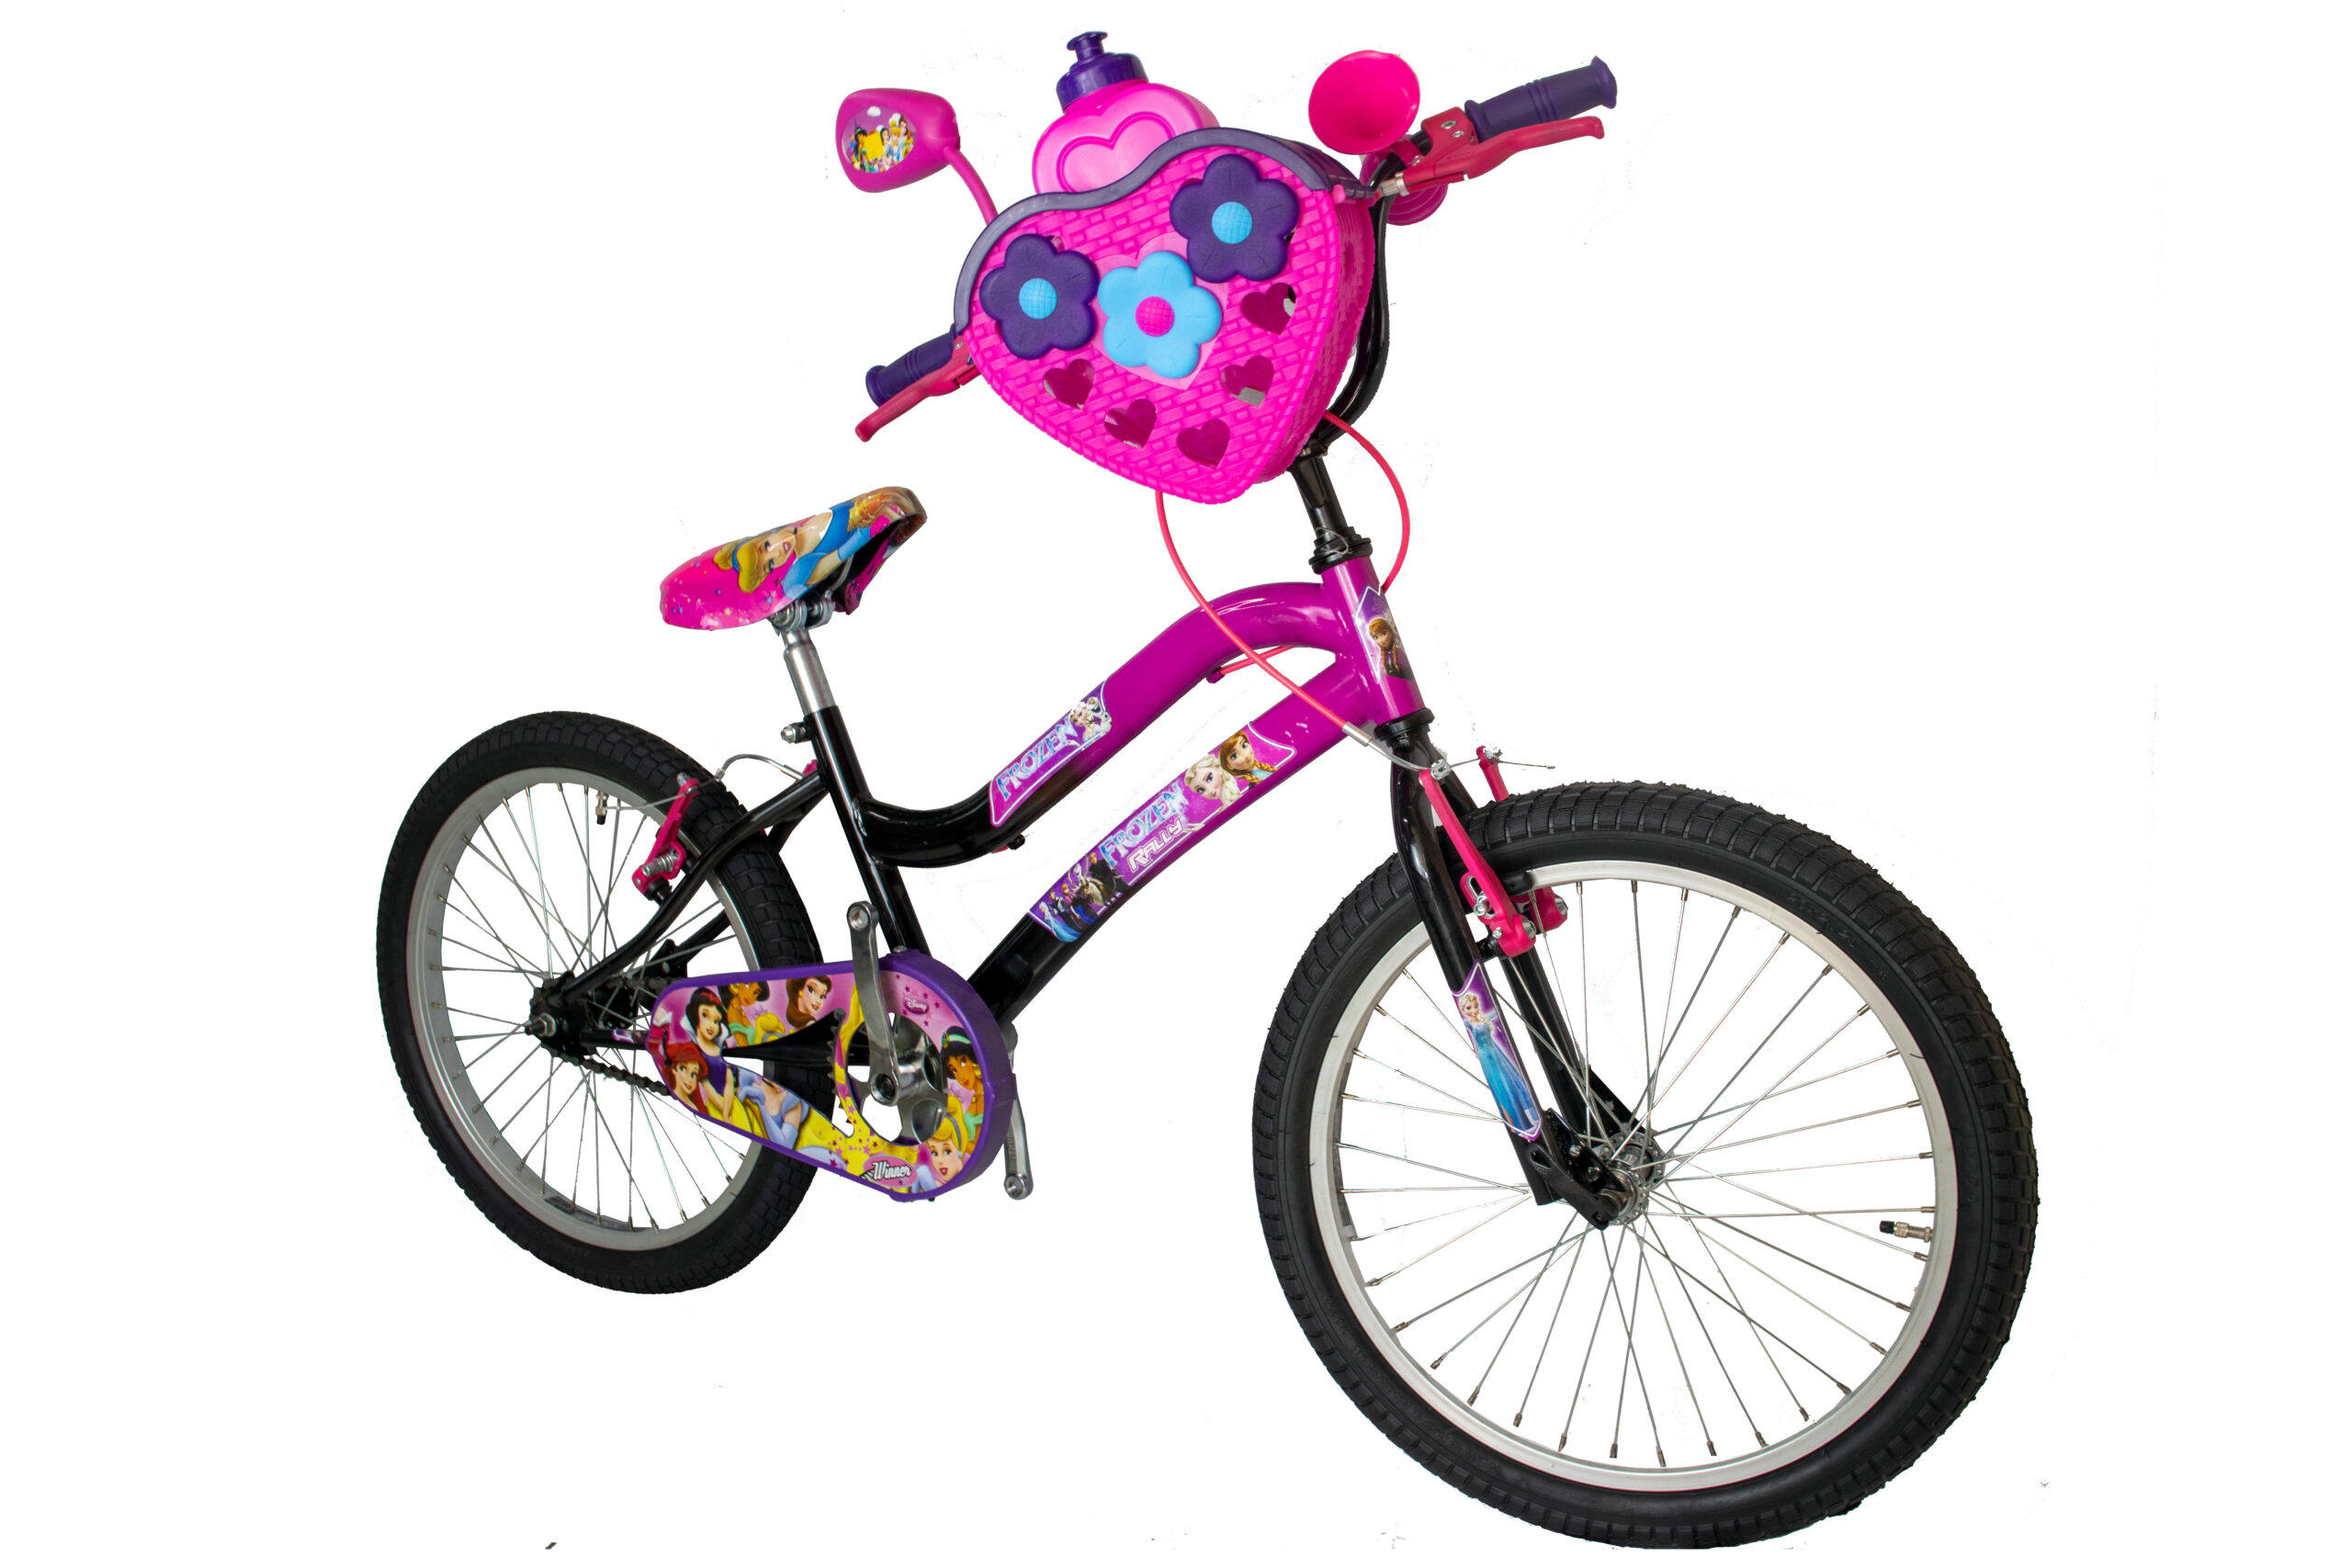 Bicicleta de niña Lola de 16 Pulgadas – Colores Menta con Rosa